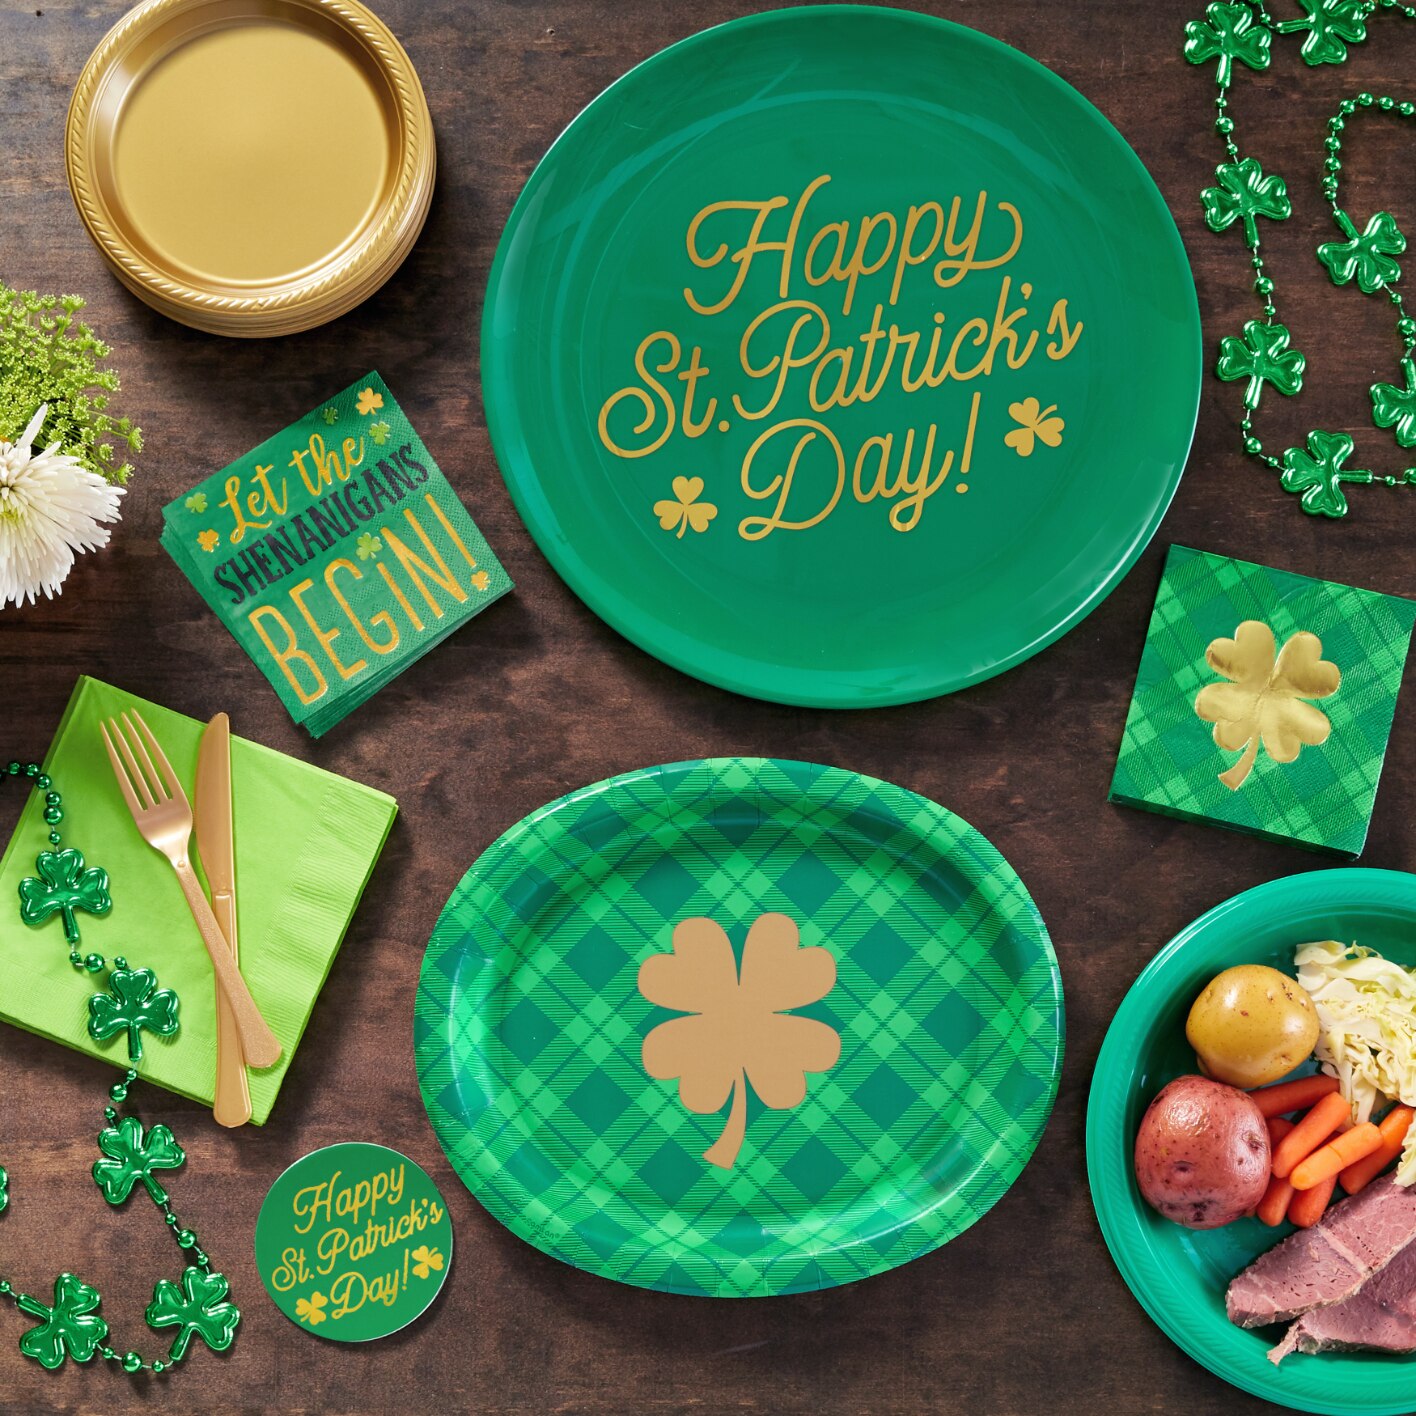 Table garnie d’assiettes, de serviettes et de décorations en perles sur le thème en vert du jour de la Saint-Patrick. 